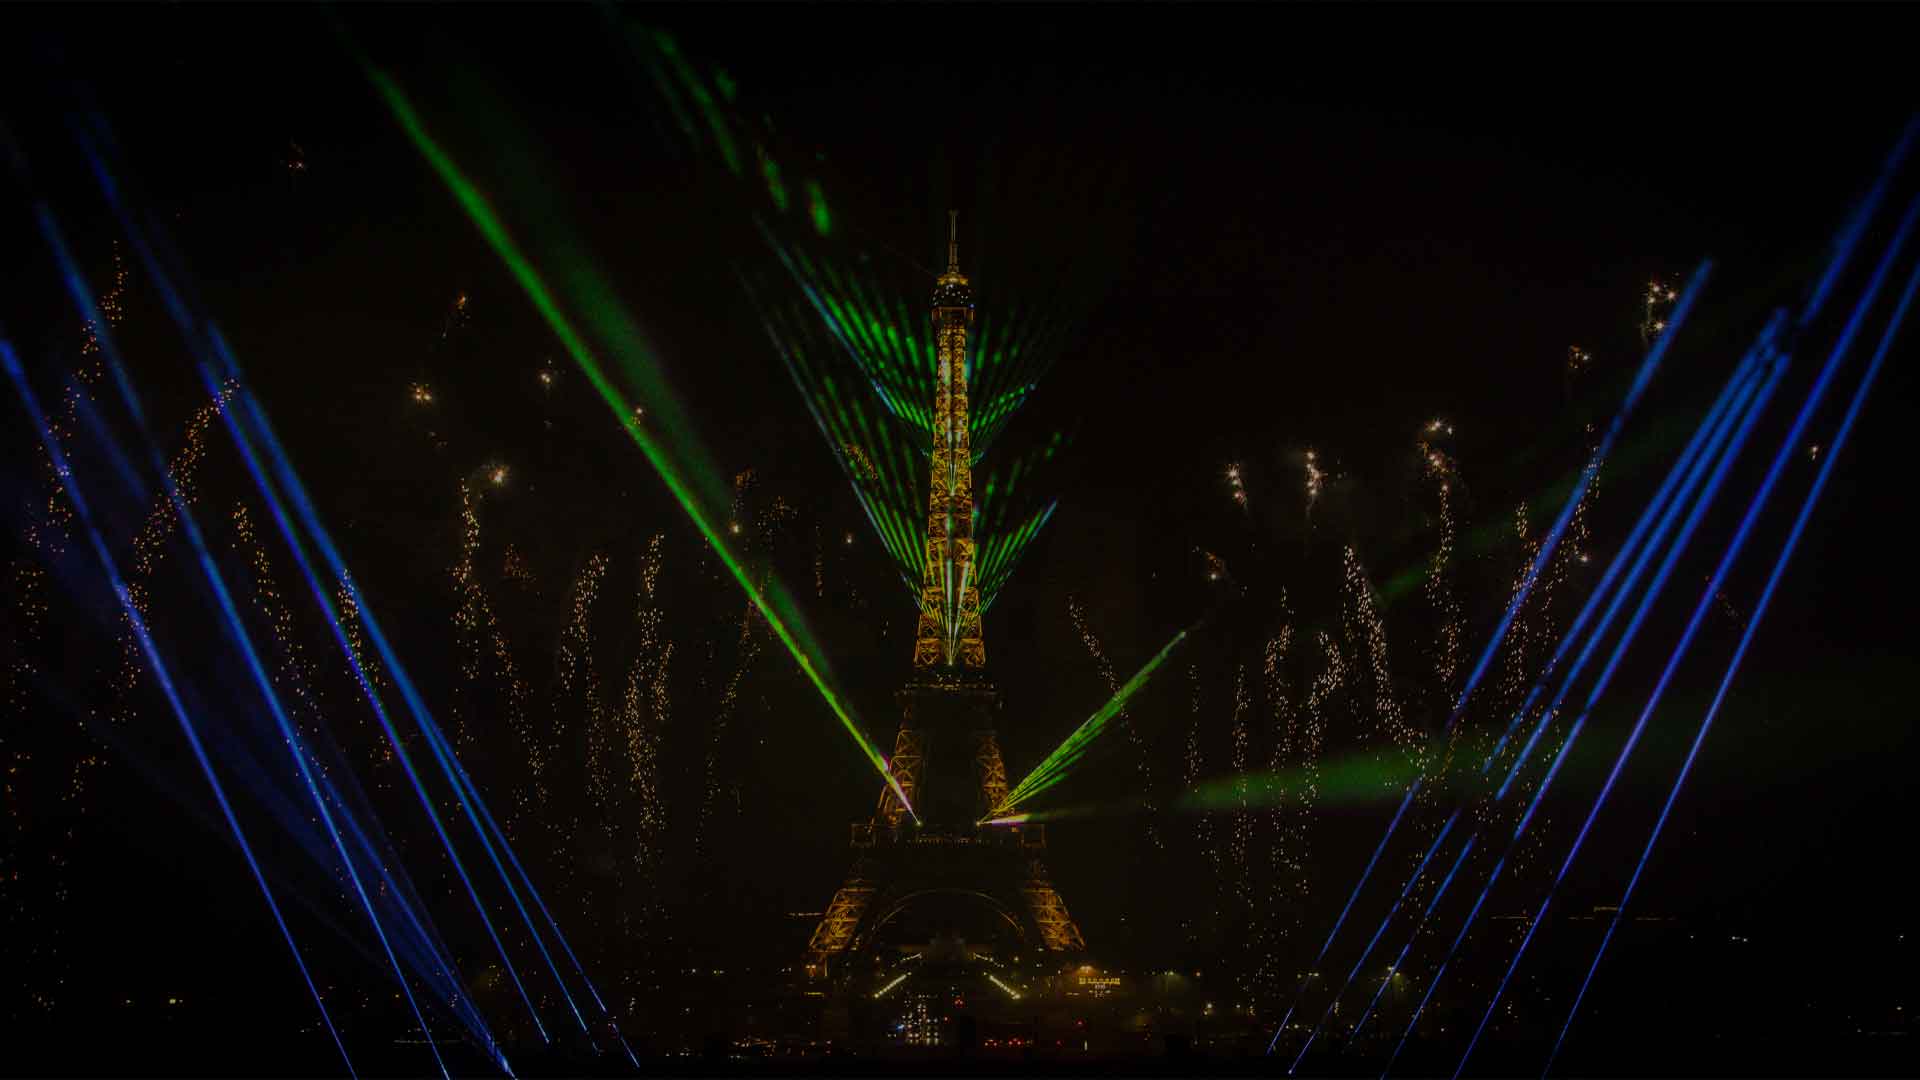 Europe Évènement - Photo de la tour Eiffel avec projection de lasers bleus et verts sur les côtés